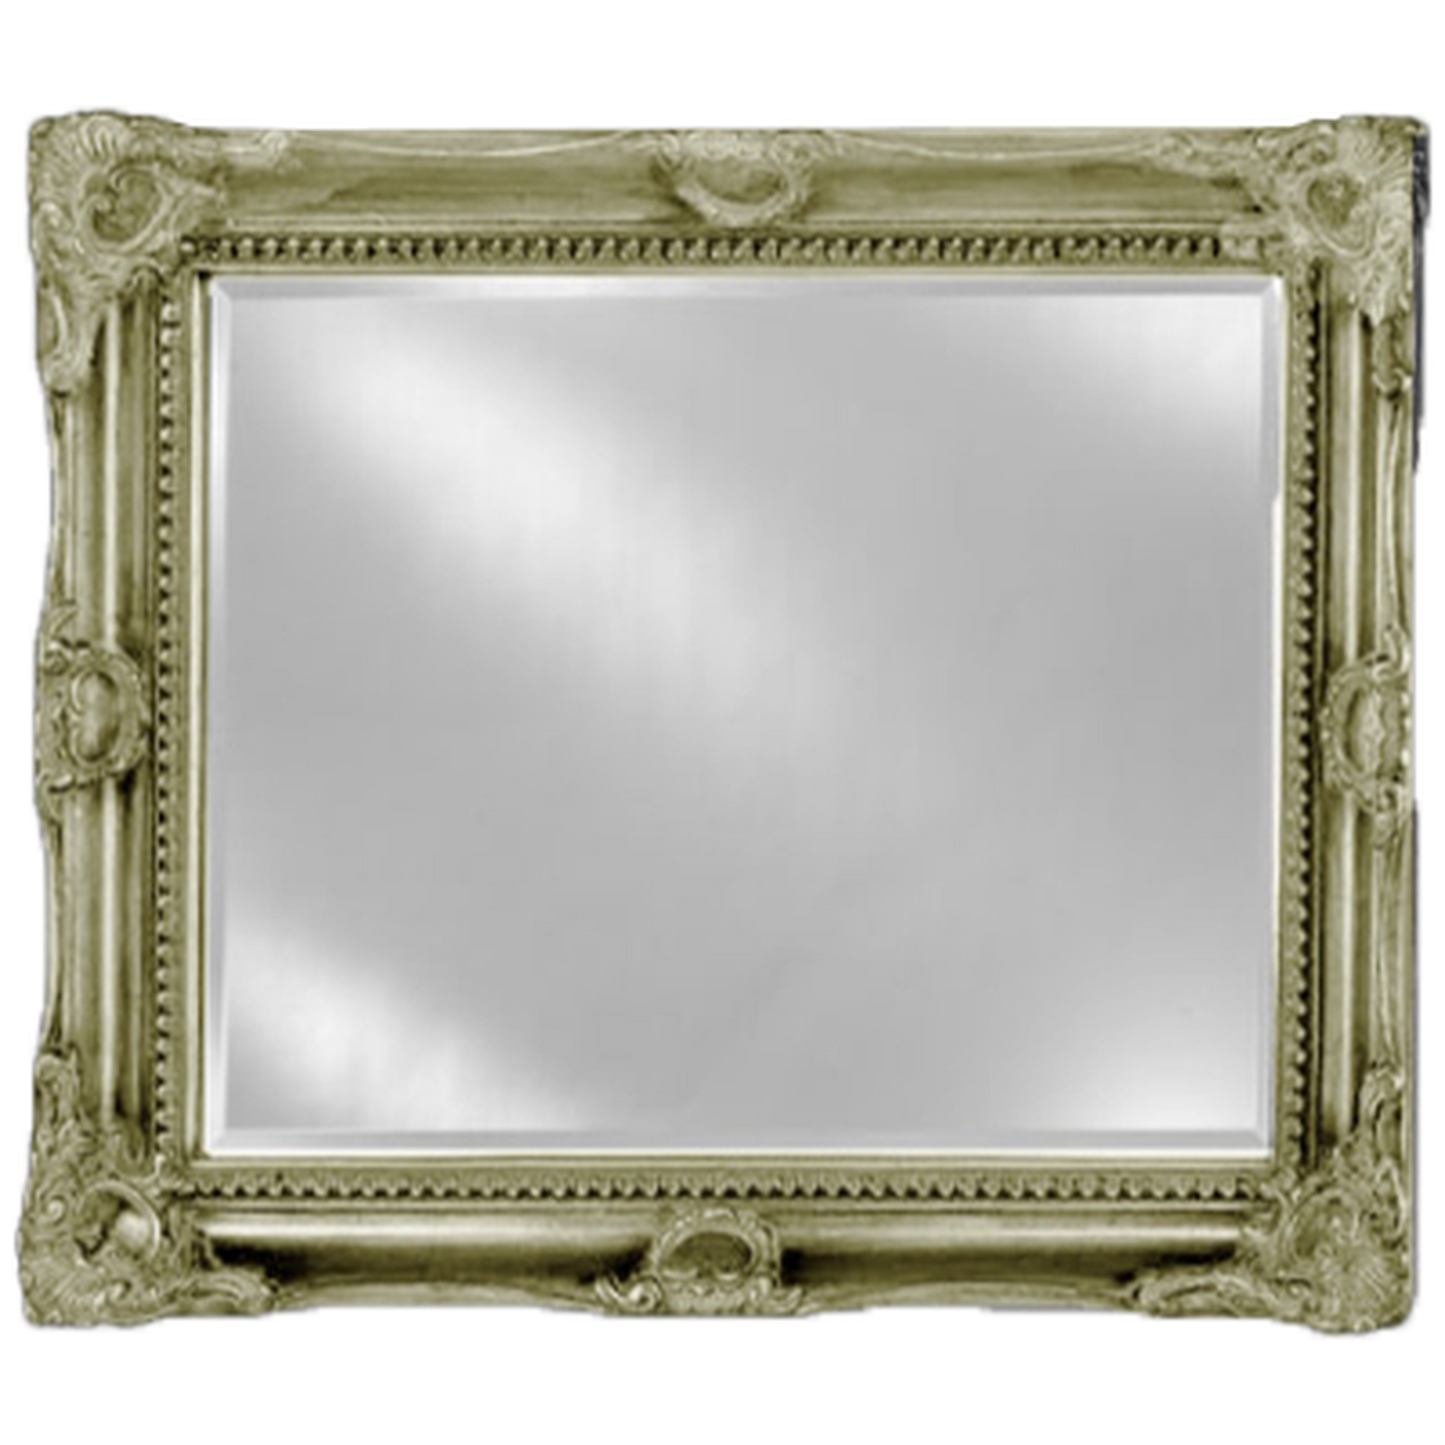 Afina Estate 51" x 40" Antique Silver Vanderbilt Royale Frame With 1" Bevel Mirror